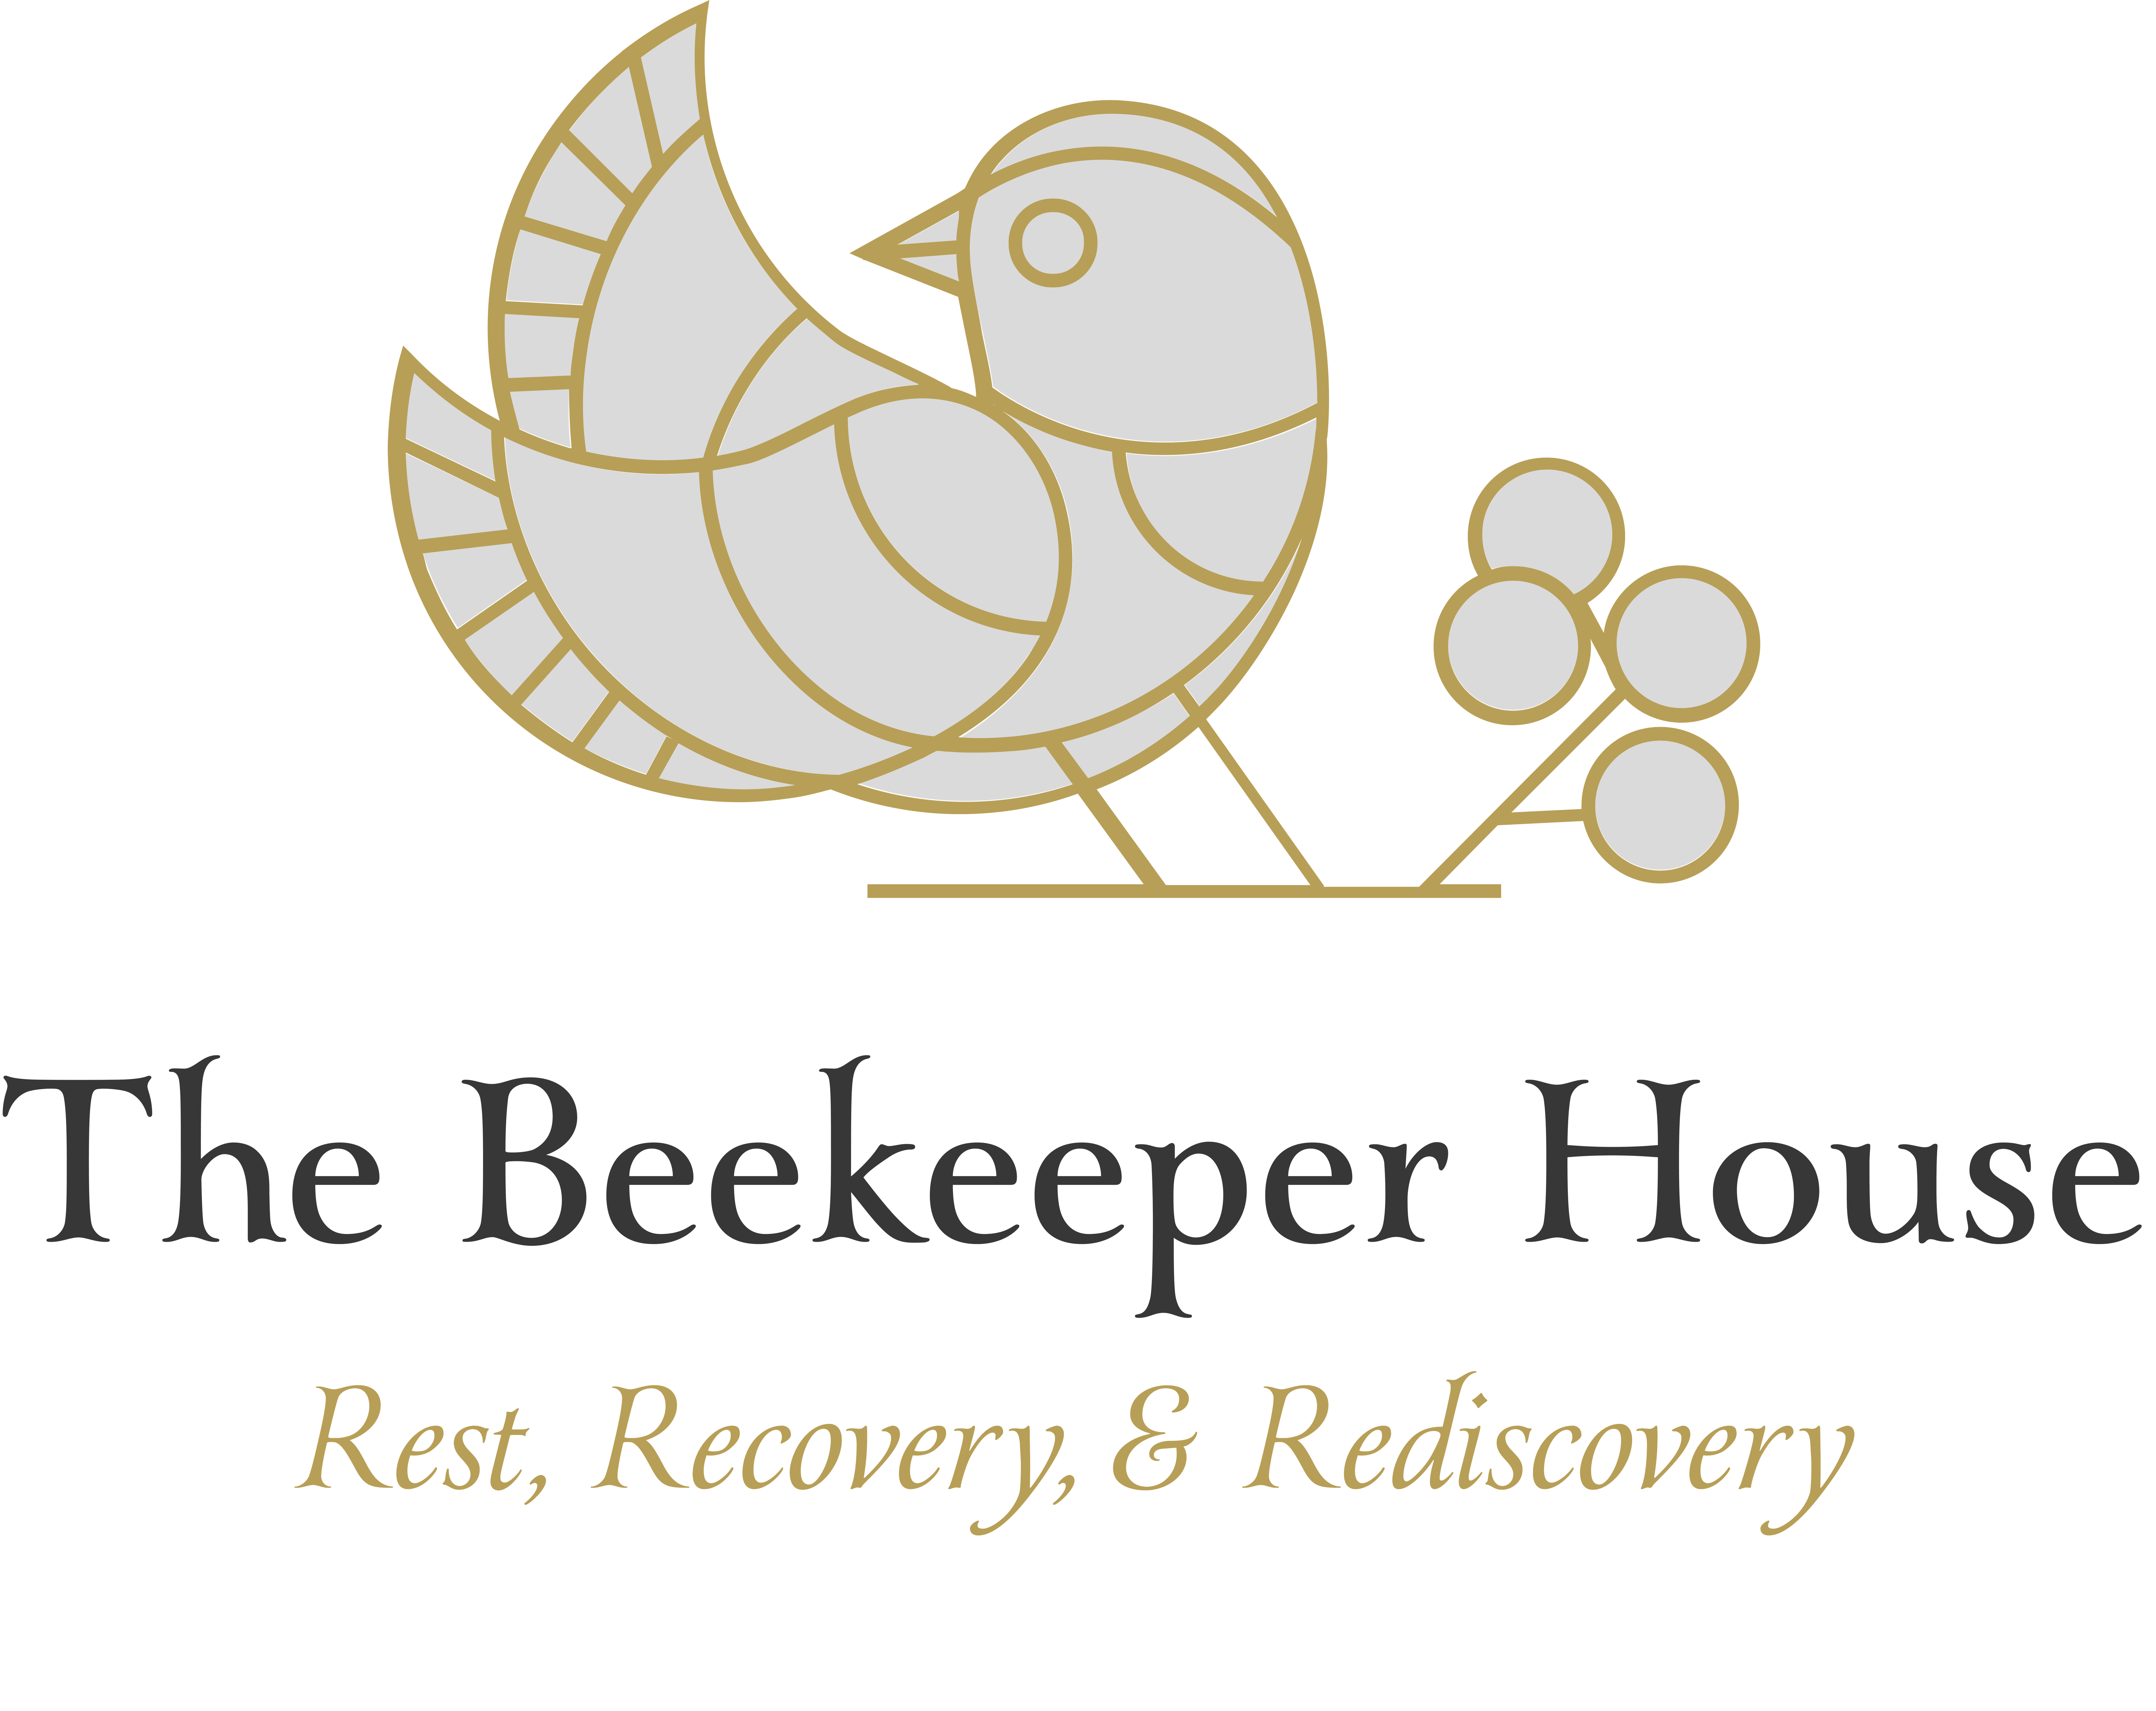 The Beekeeper House Ltd